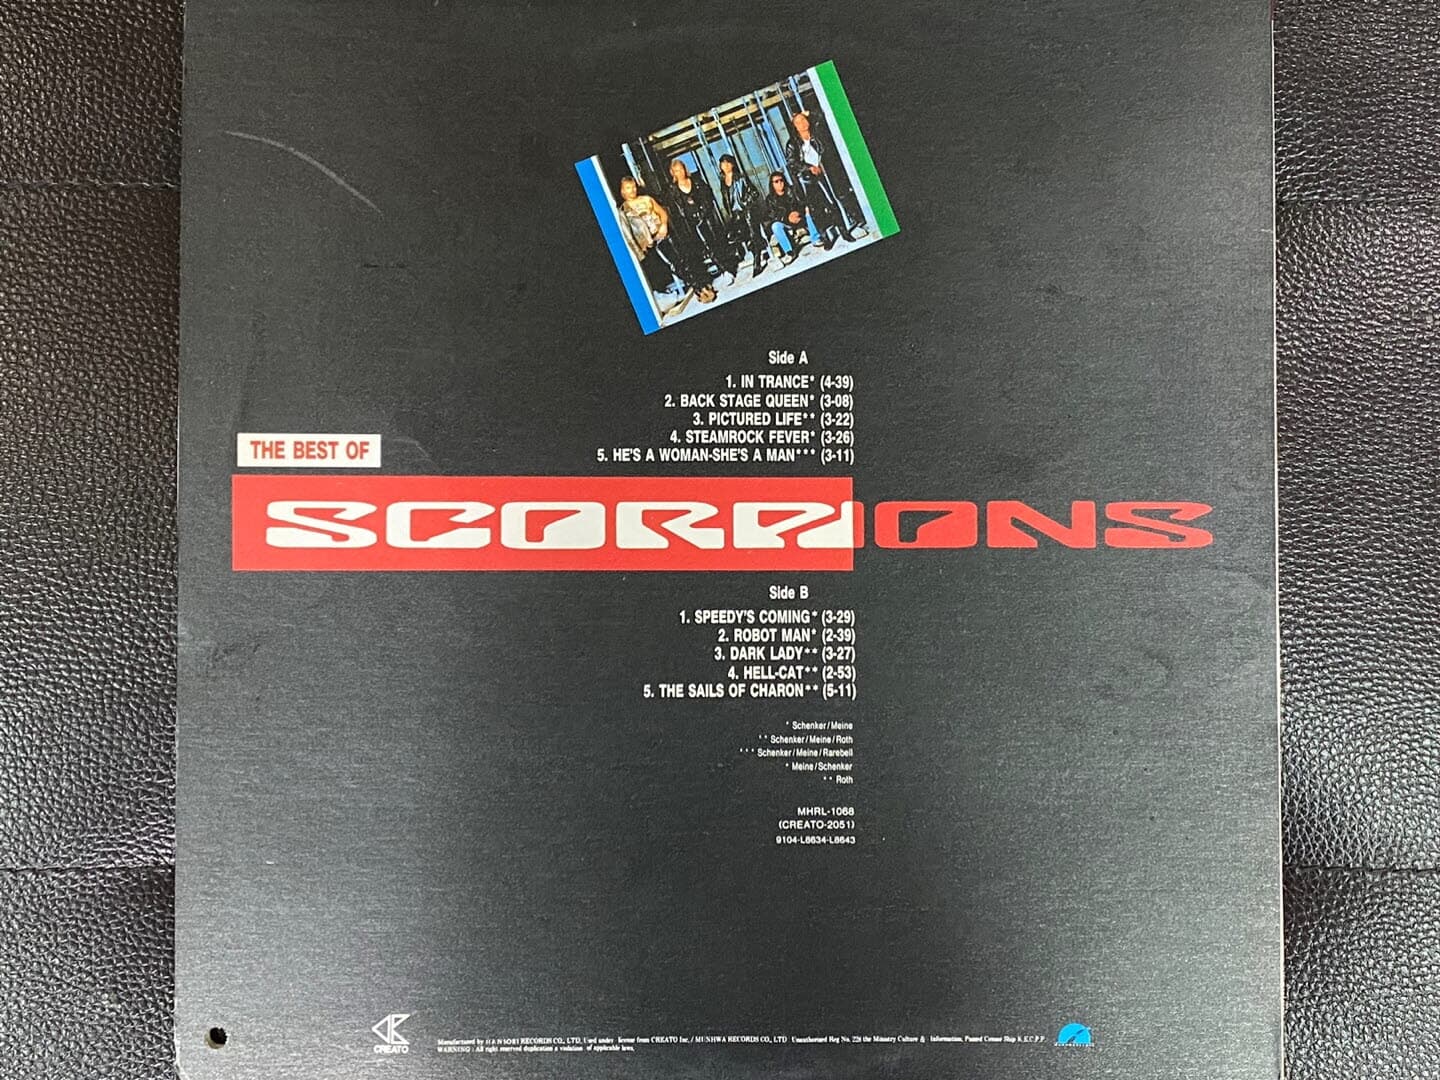 [LP] 스콜피언스 - Scorpions - The Best Of Scorpions LP [문화-라이센스반]